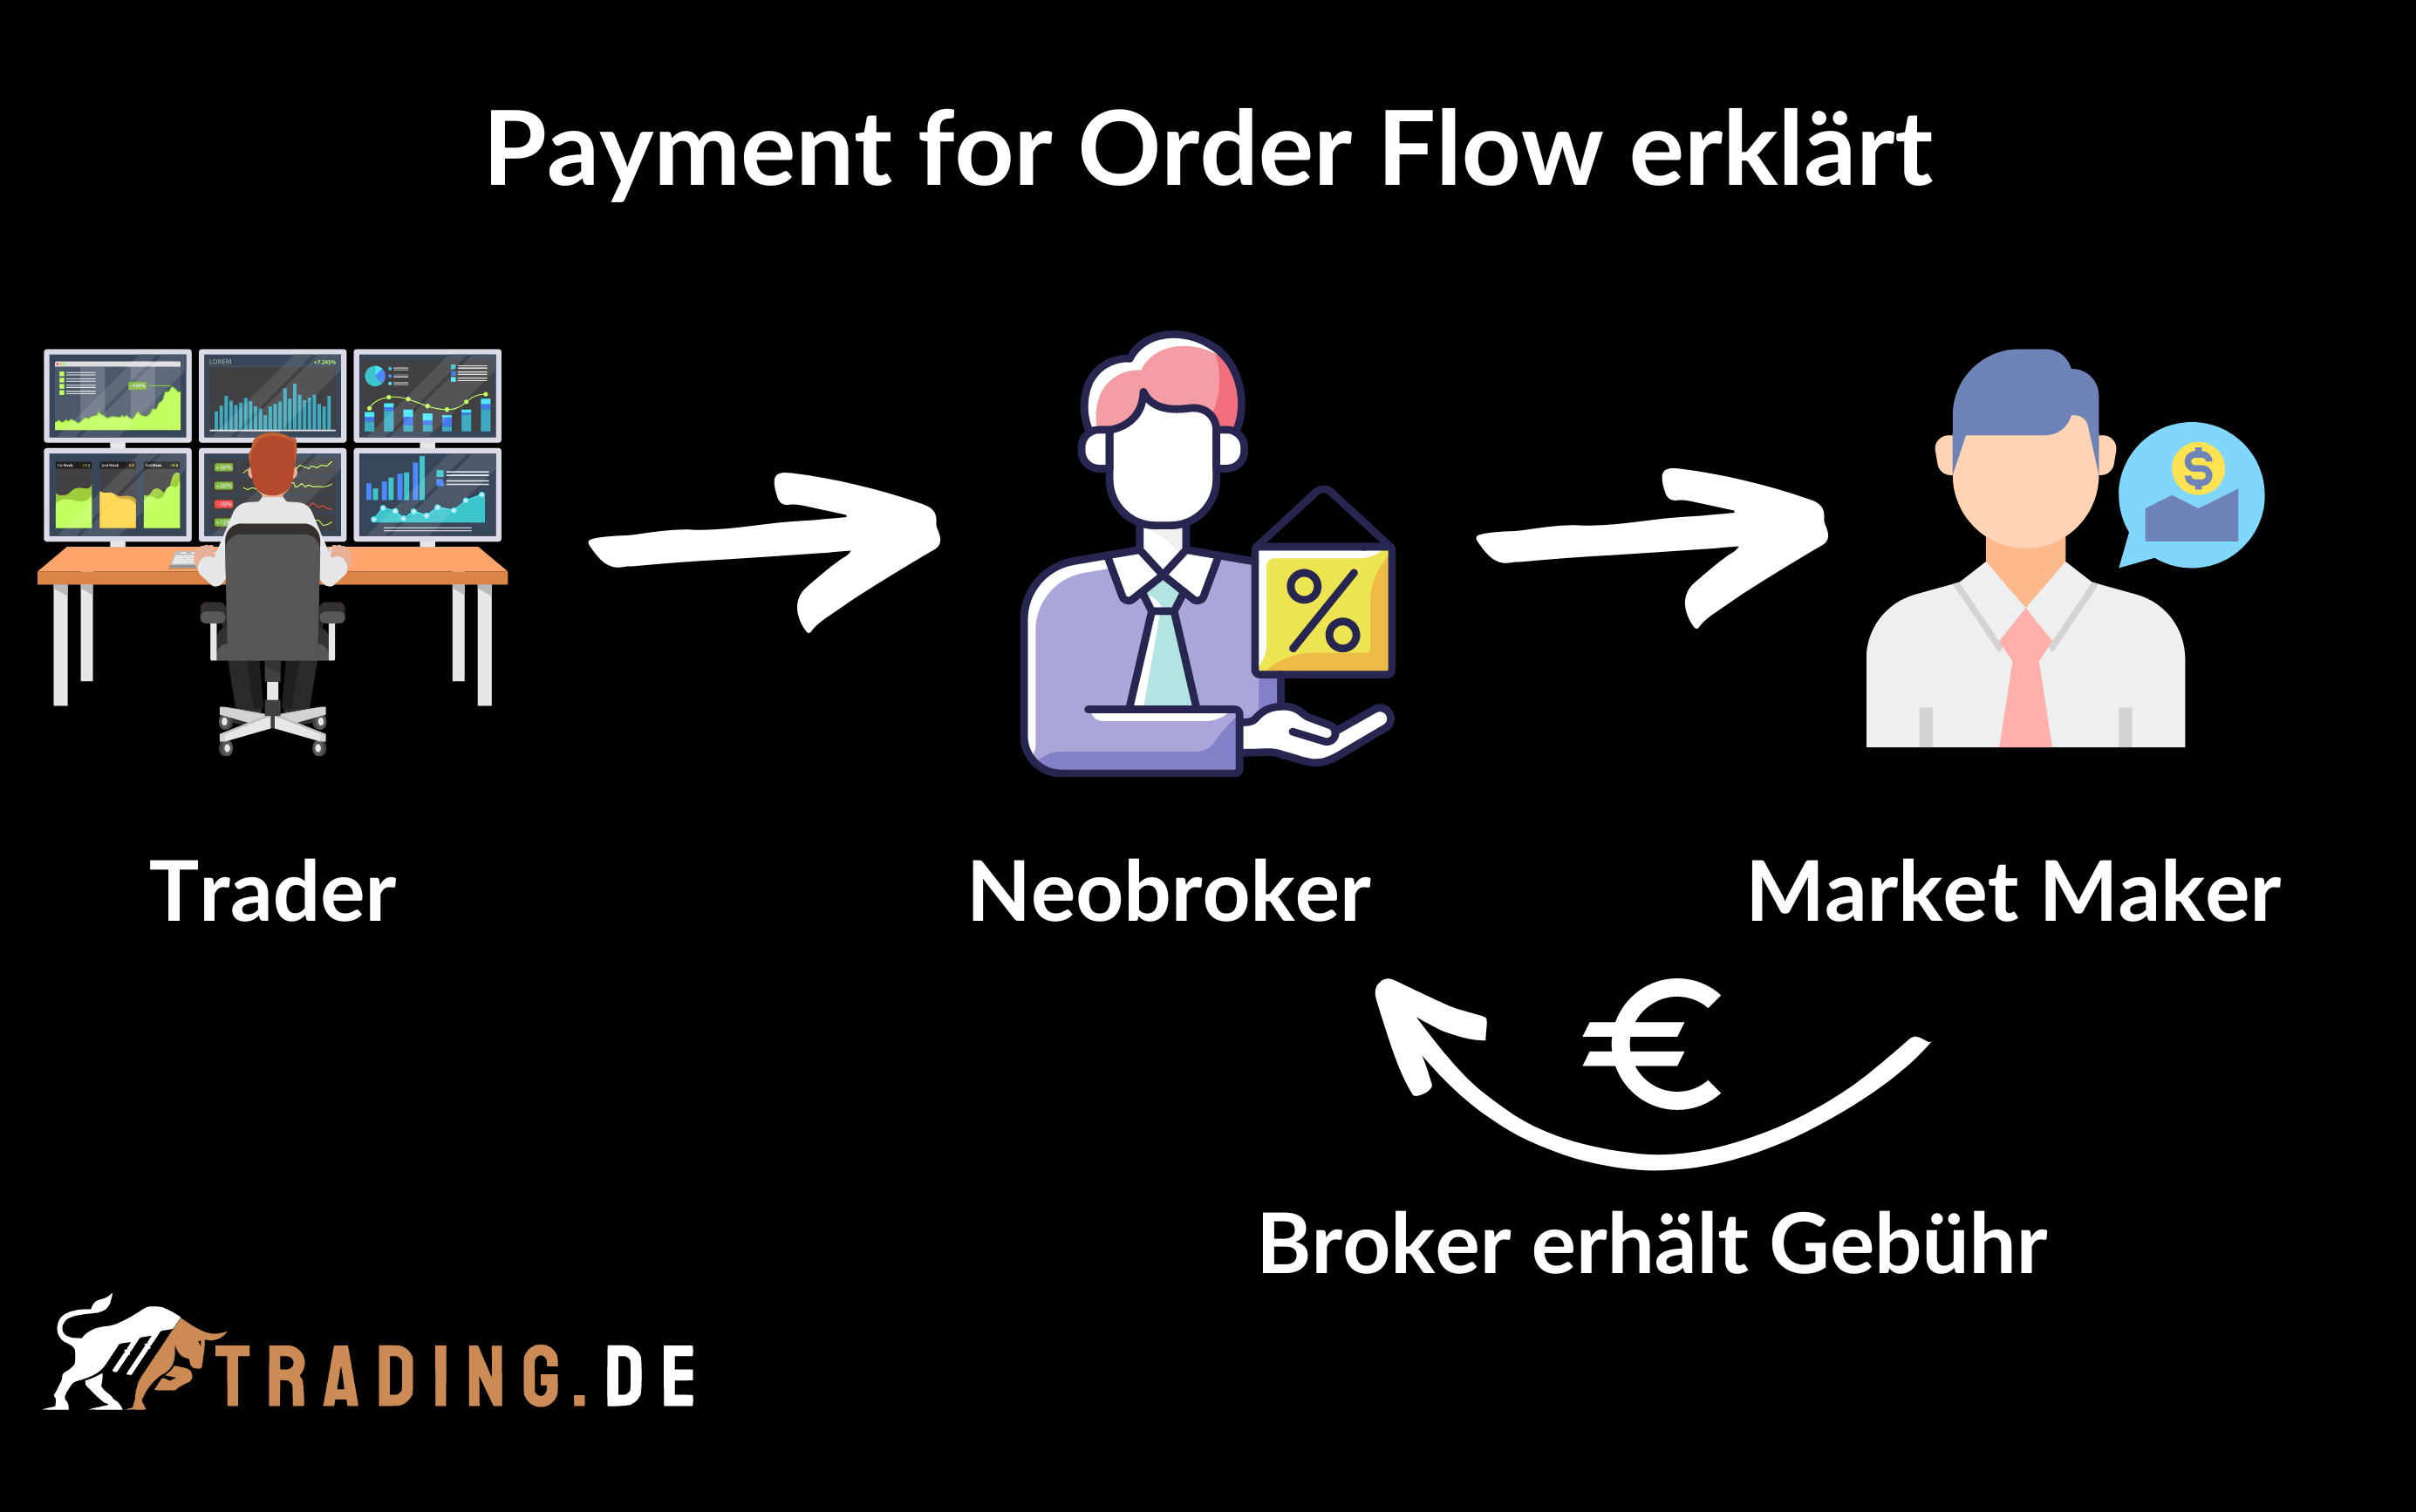 Payment for Order Flow erklärt